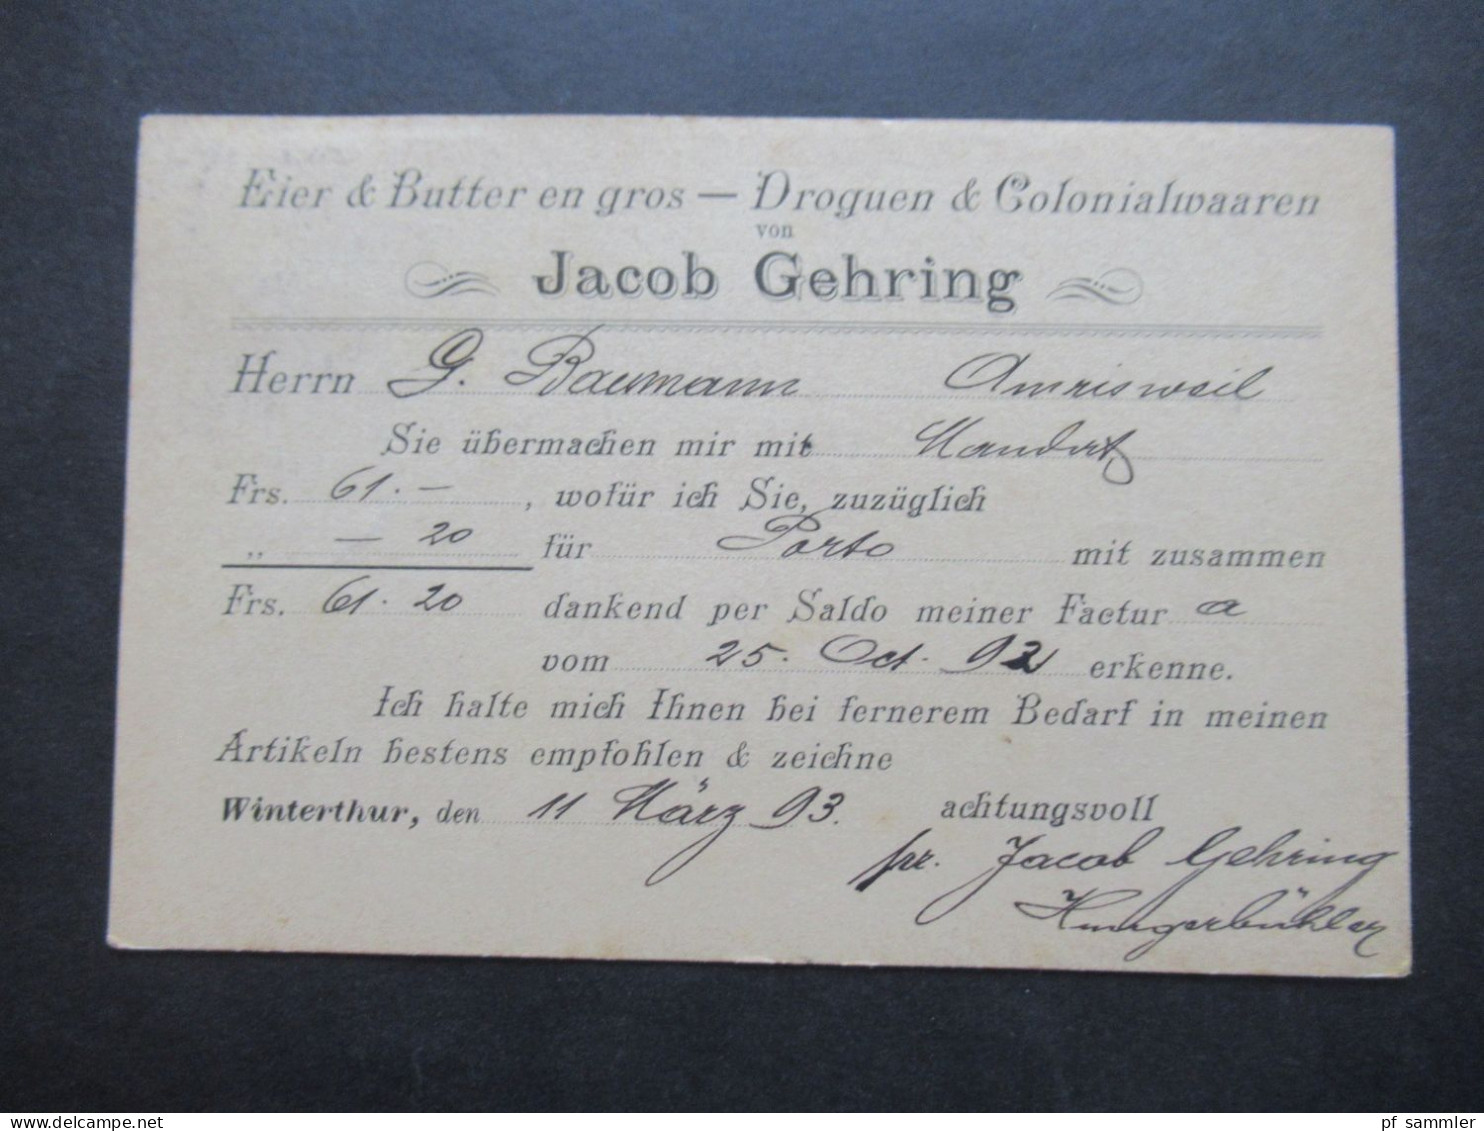 1889 - 1894 Belege Posten Schweiz Firmen PK insgesamt 40 Stück!! Bedruckte Karten / dekorative Karten / klare Stempel